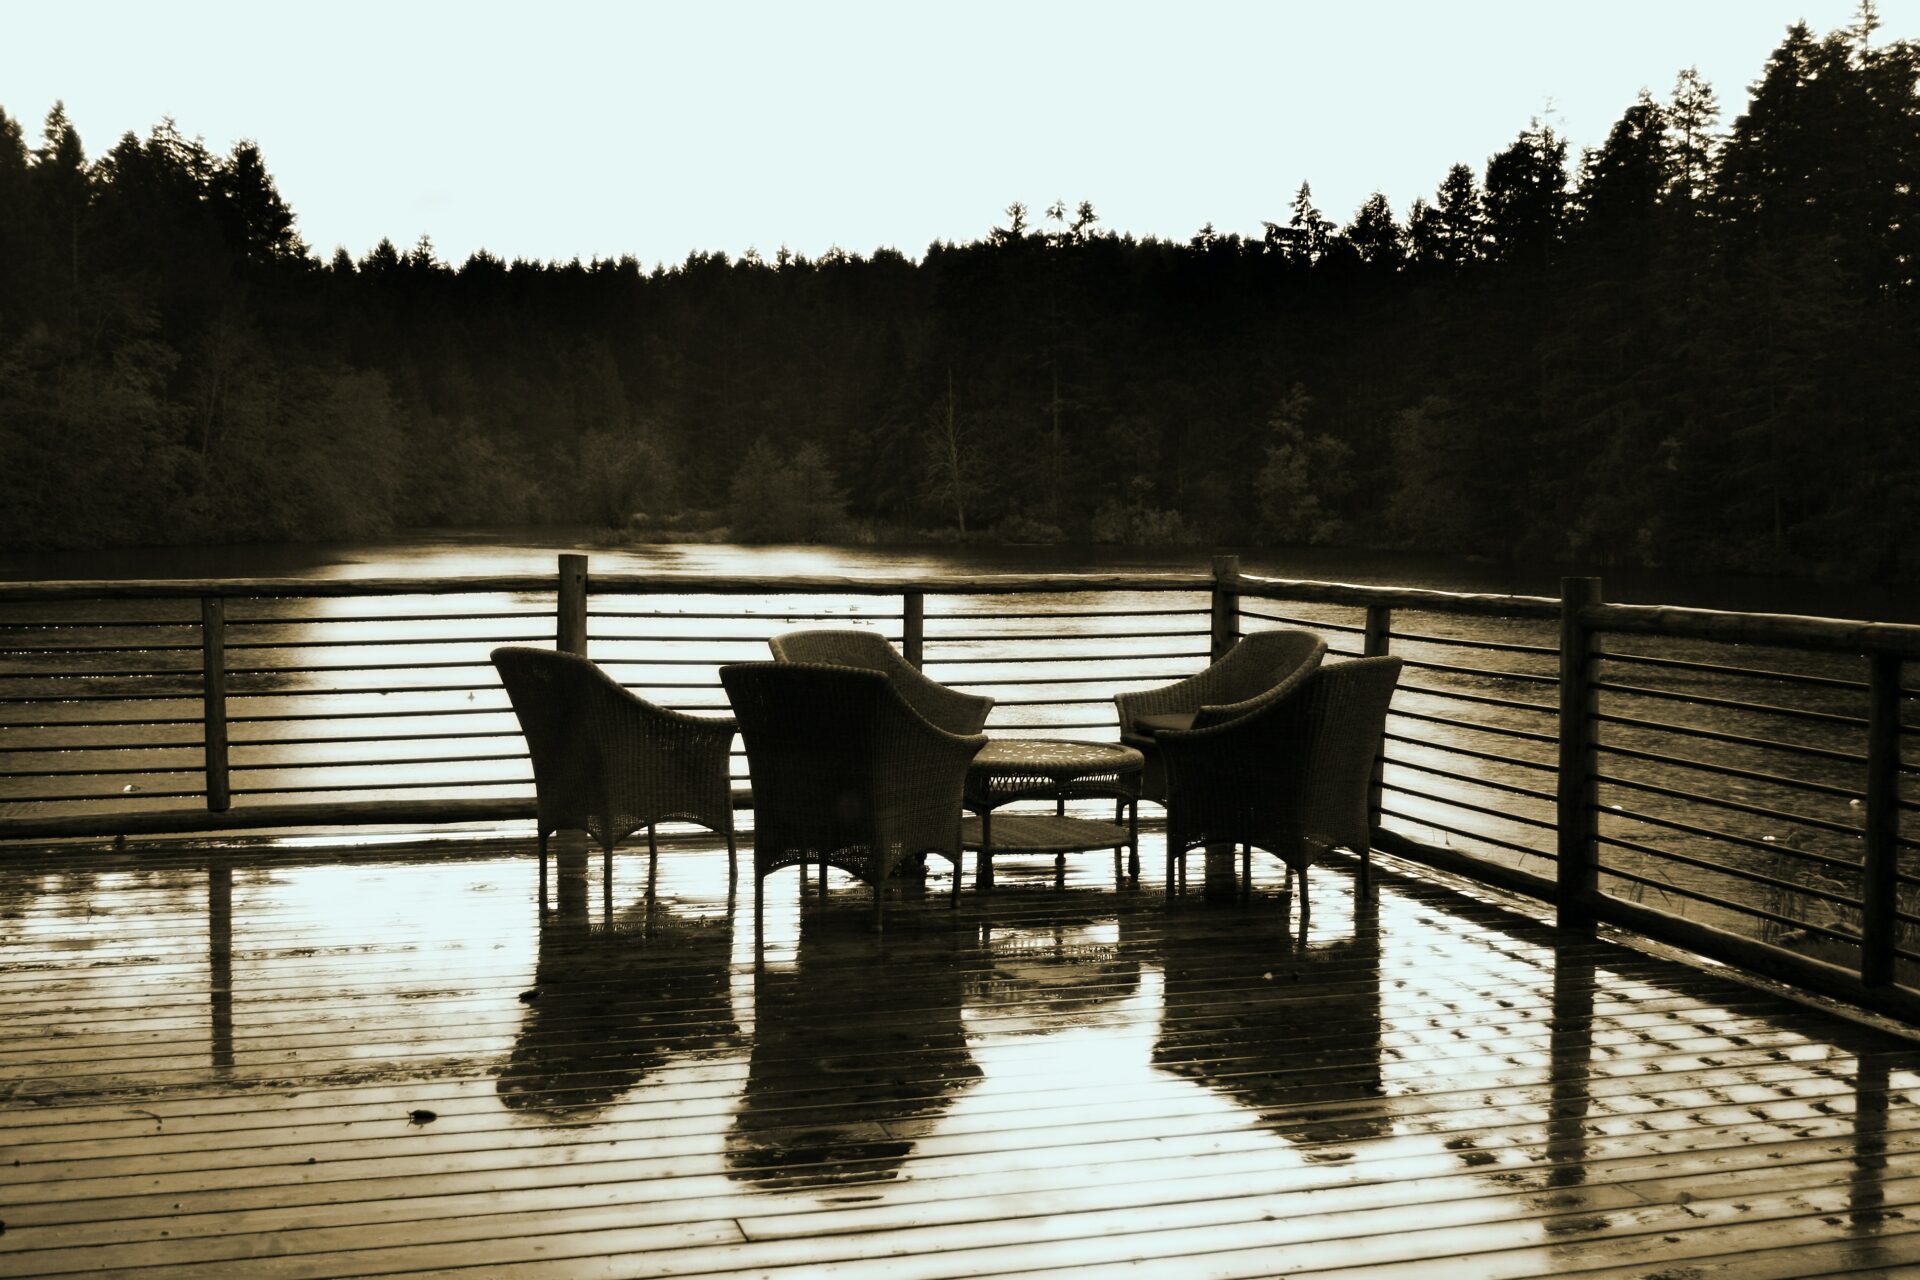 træterrasse ud til vandet med træborde og træstole der står foran et træhegn under en solnedgang der skinner ned på naturen